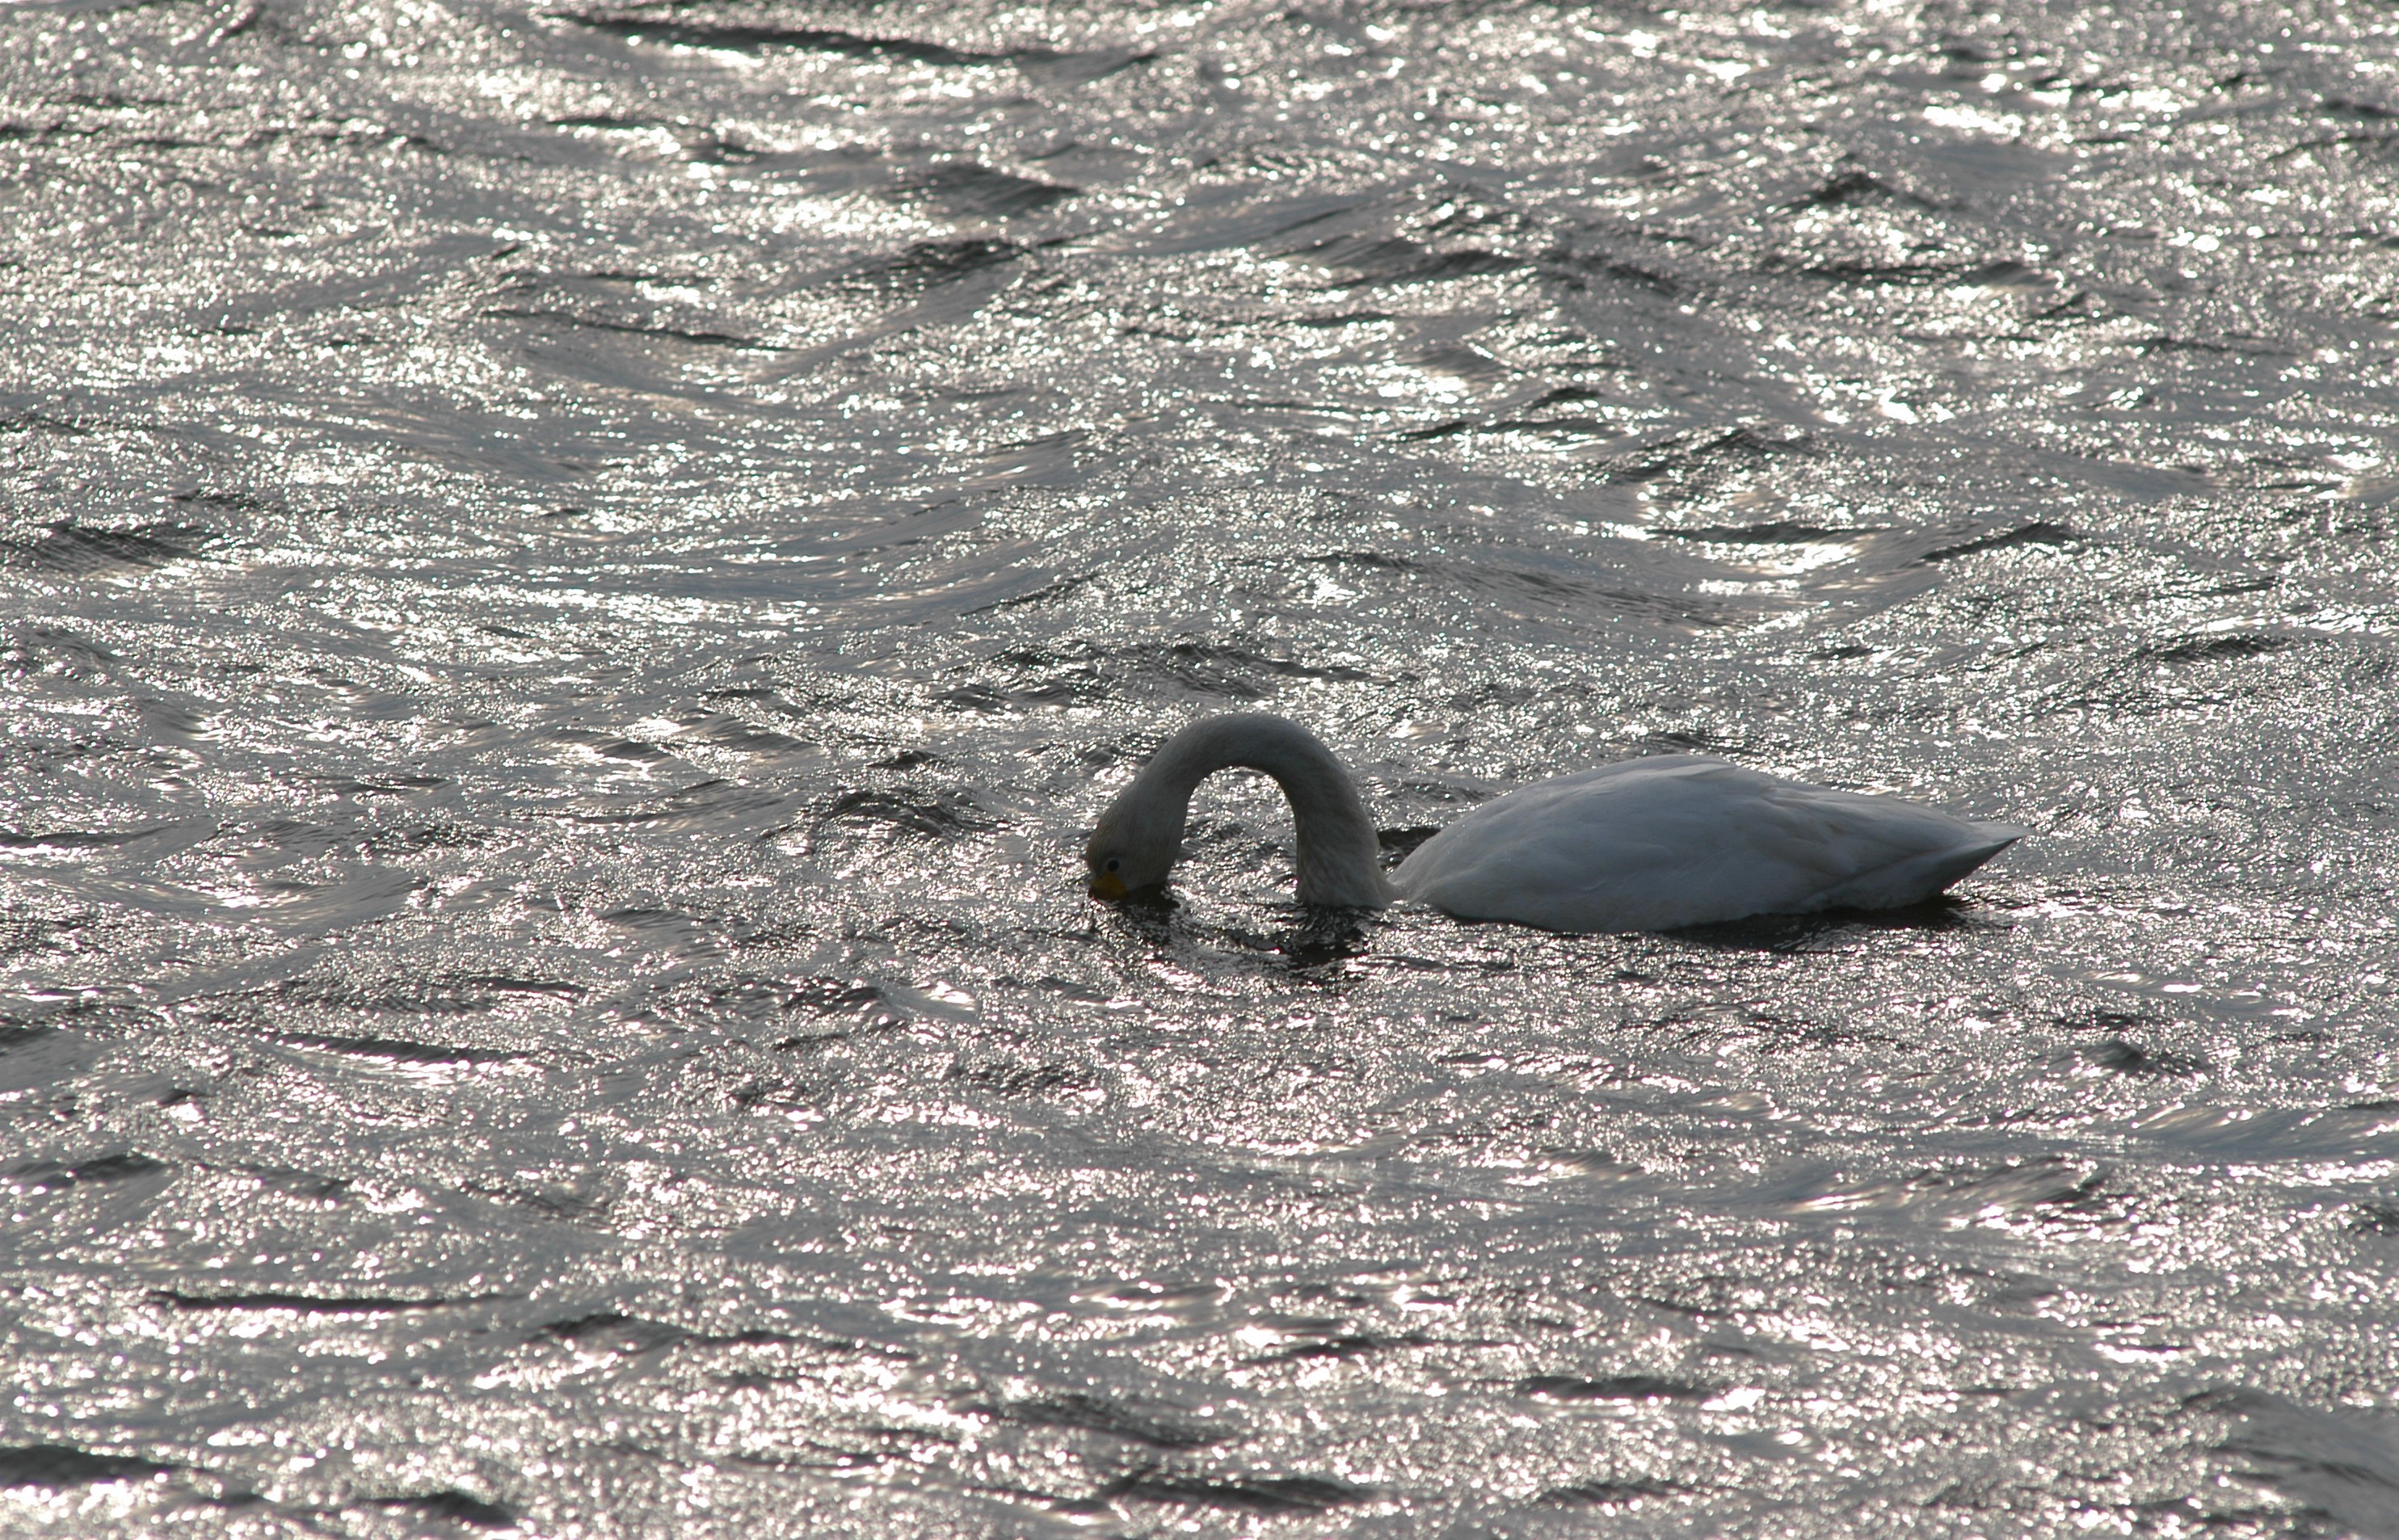  Svaner og andre vandfugle kan fa blyhagl i kroppen under fodesogning pa lavt vand foto Jan Skriver